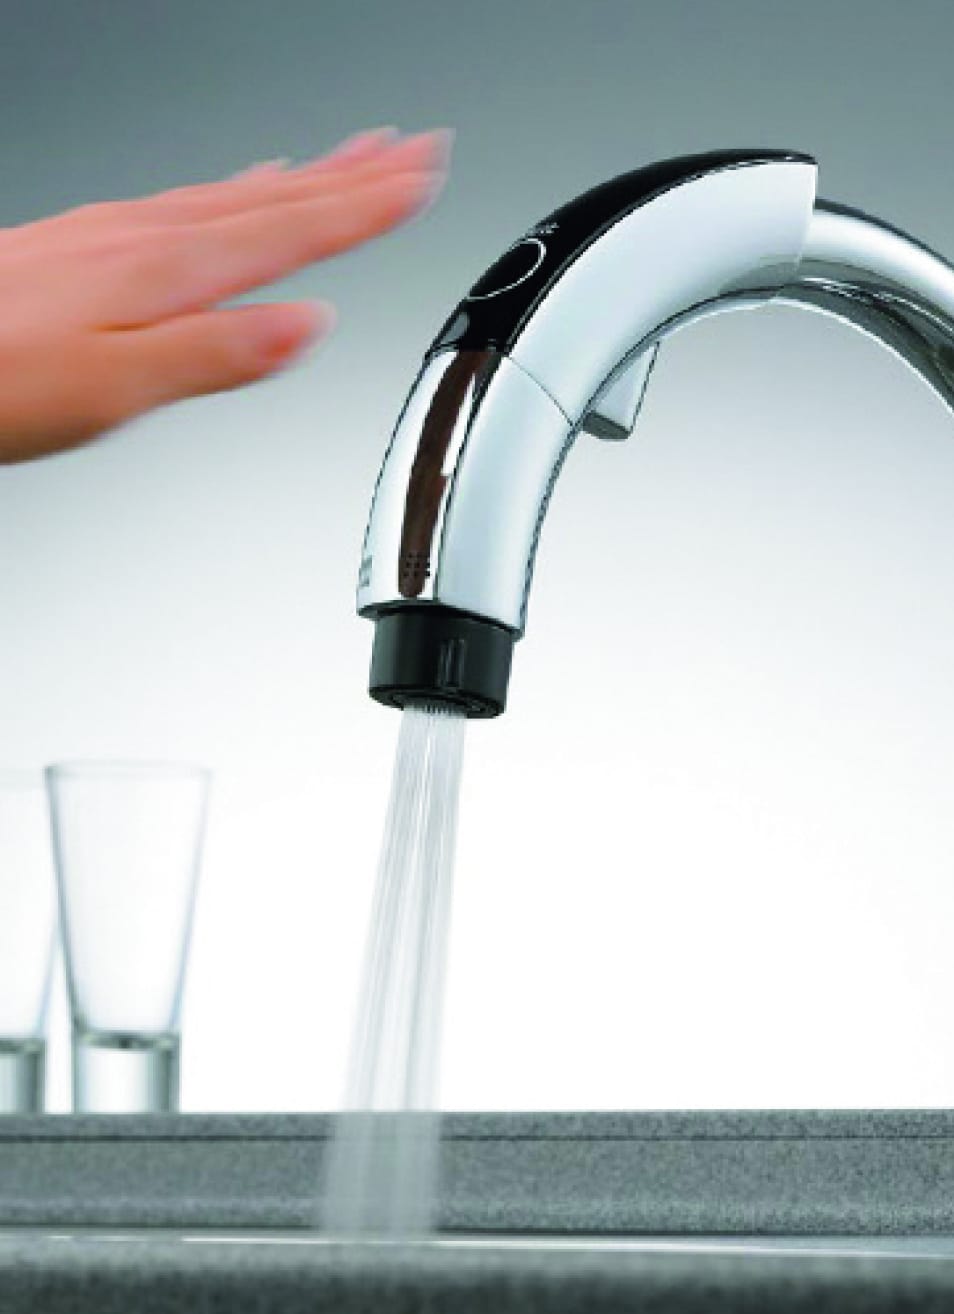 Ra mắt vòi rửa tự động cấp nước không chạm nhờ công nghệ cảm biến.